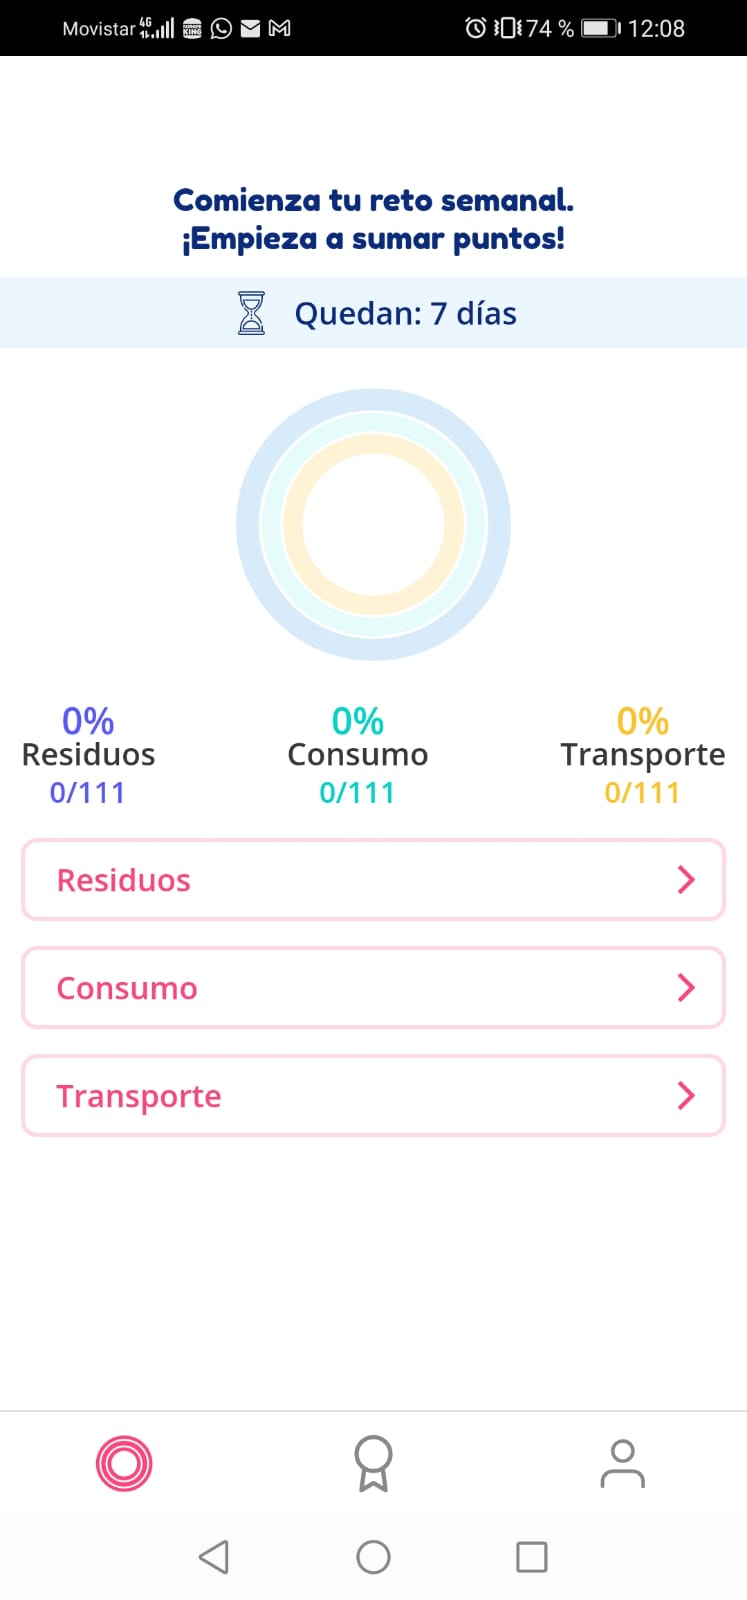 En la imagen se puede ver la página principal de la app en la que se diferencian las secciones de residuos, consumo y transporte.